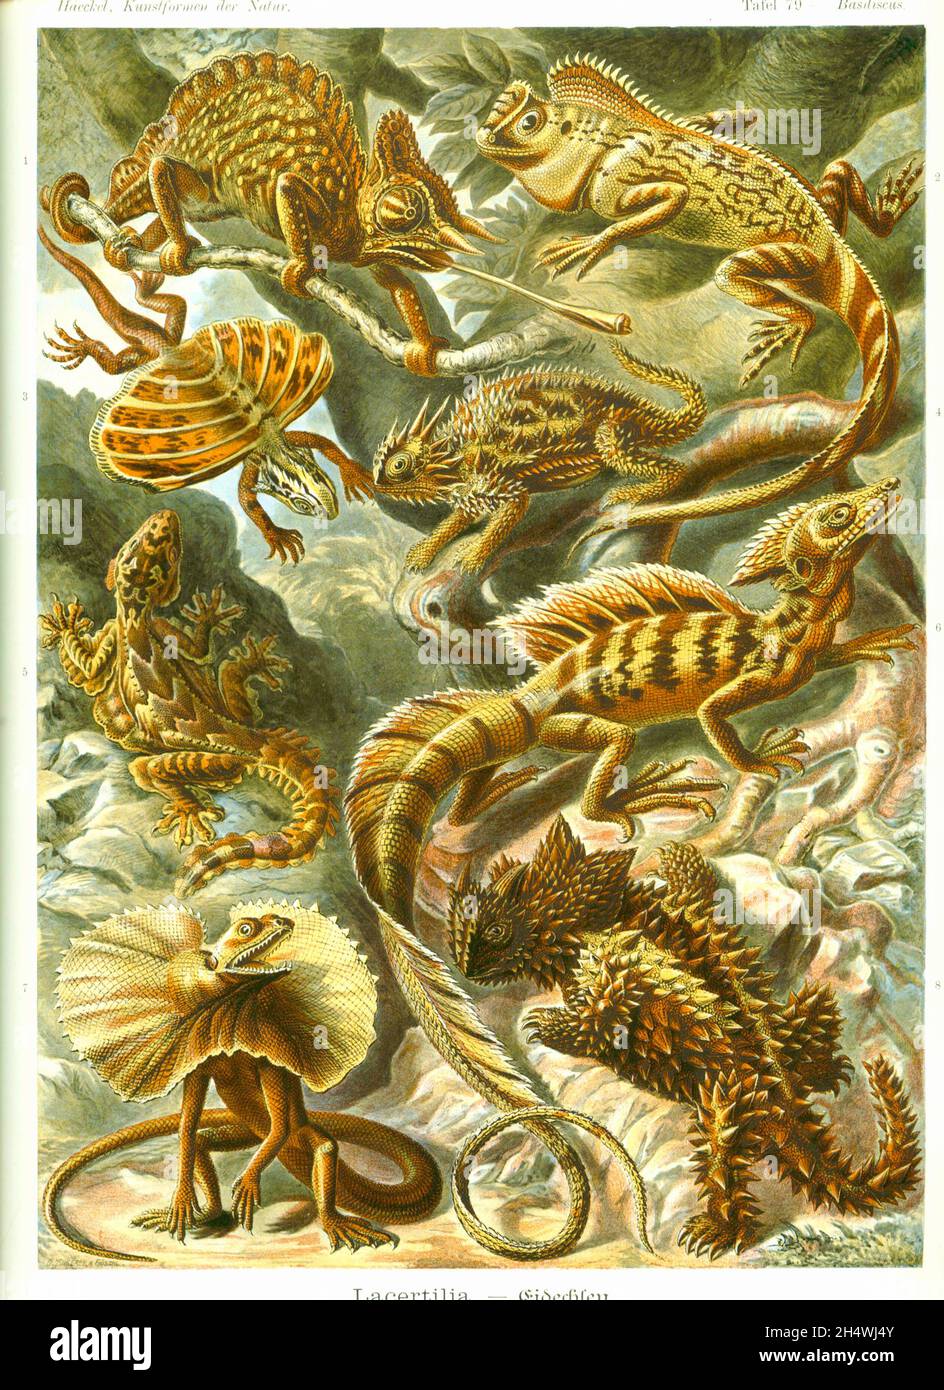 Ernst Haeckel - Lacertilia - 1904 - Eidechsen Stockfoto